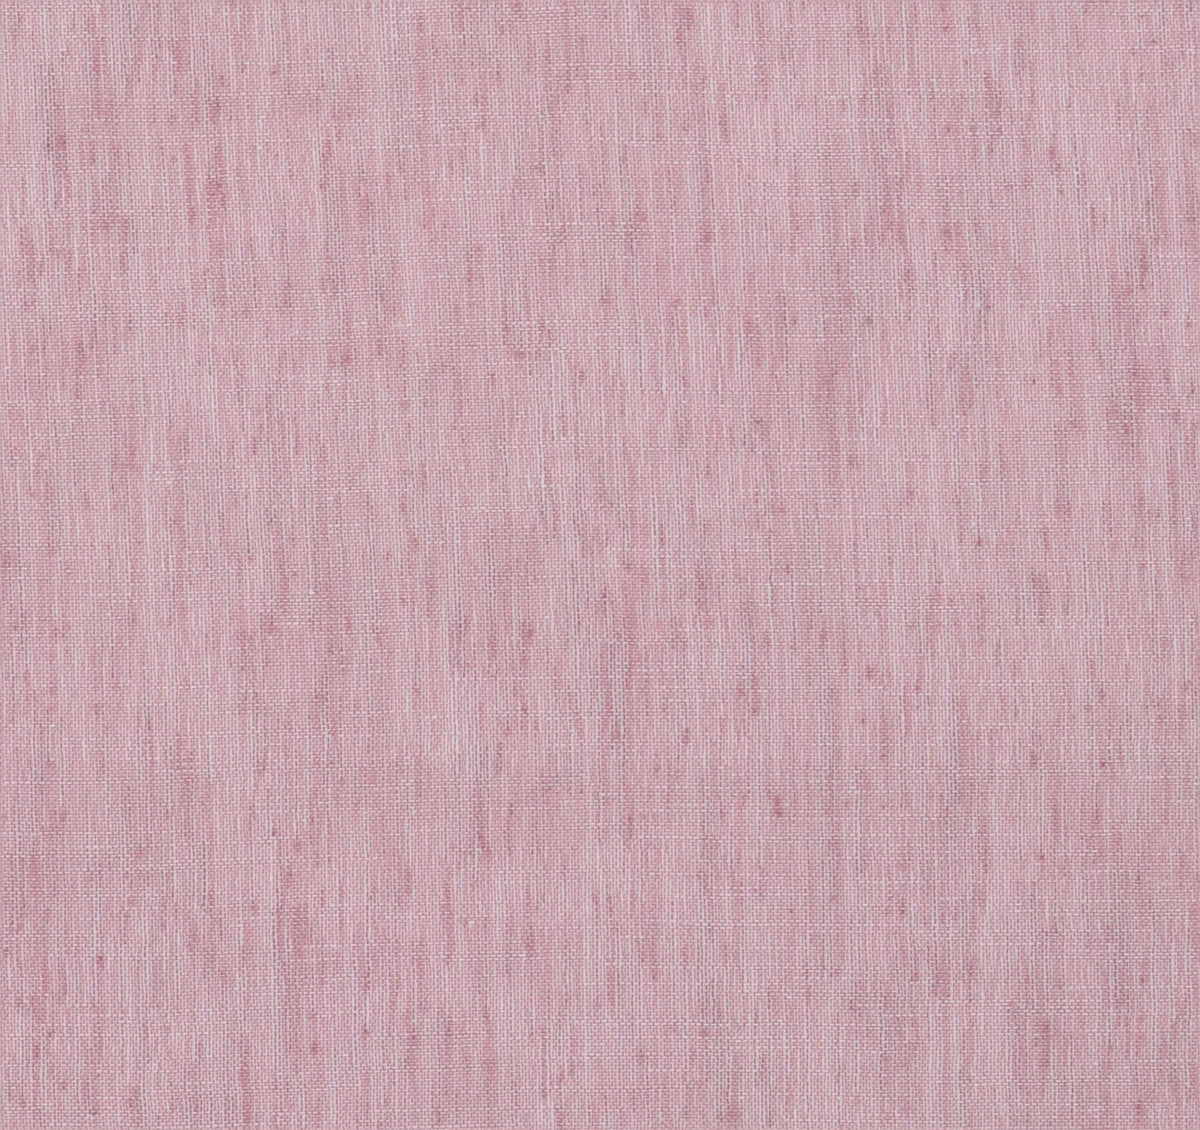 Tagesvorhang violett rosa Pax